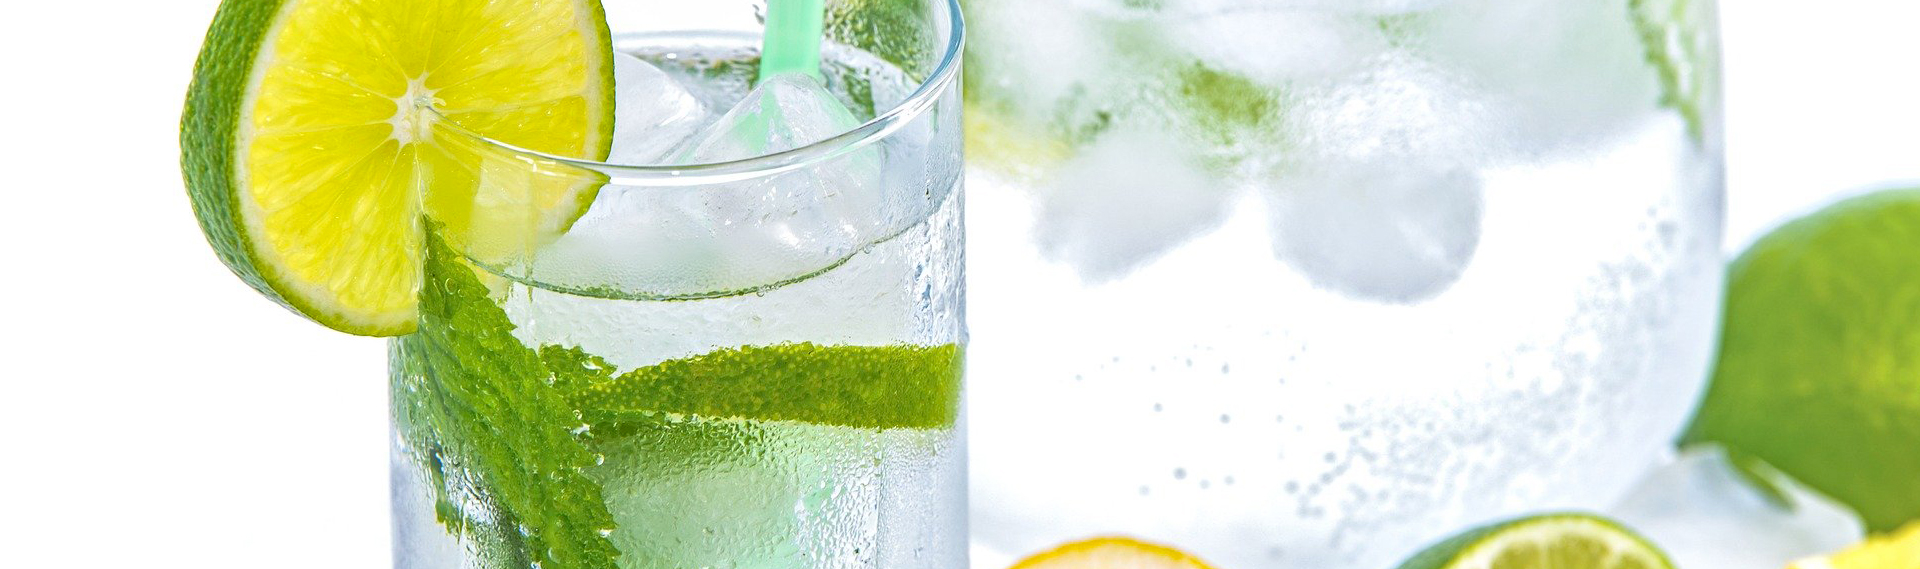 Citronnade à boire en cure detox servie dans un verre à long drink décoré de menthe et de rondelles de citrons jaunes